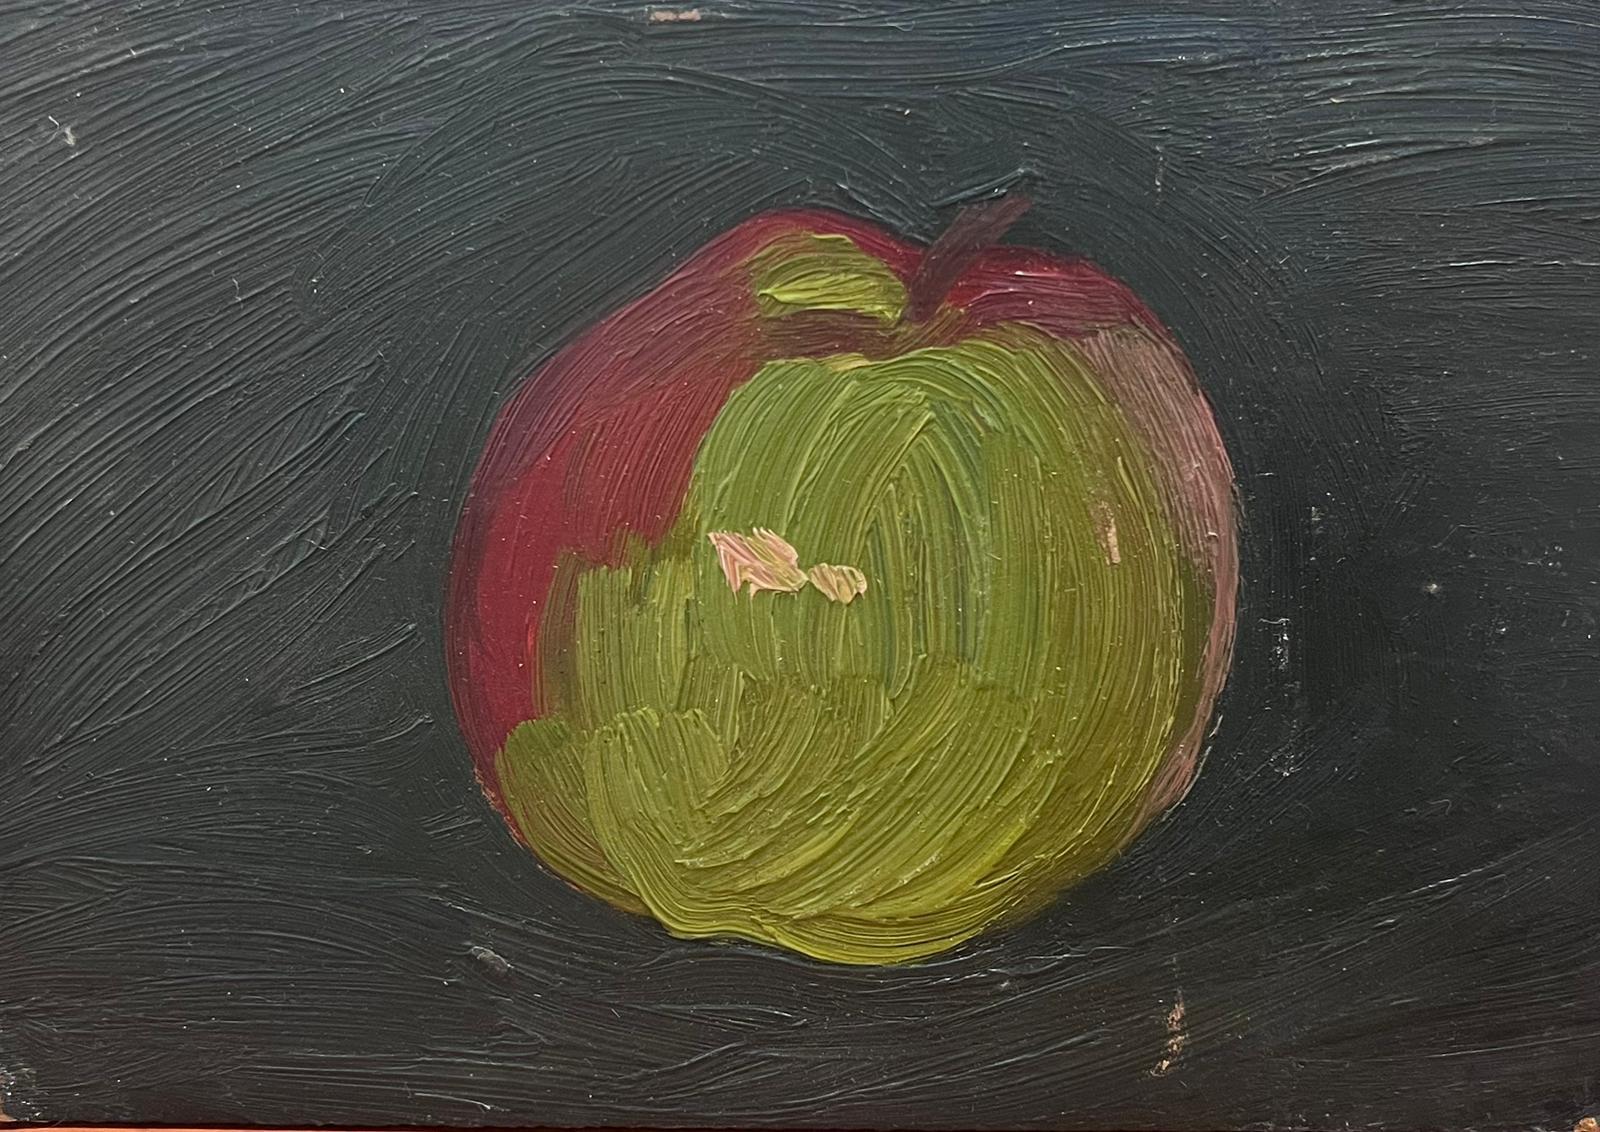 French School Interior Painting – Französisches modernistisches Ölgemälde des 20. Jahrhunderts, Stillleben eines Apfels